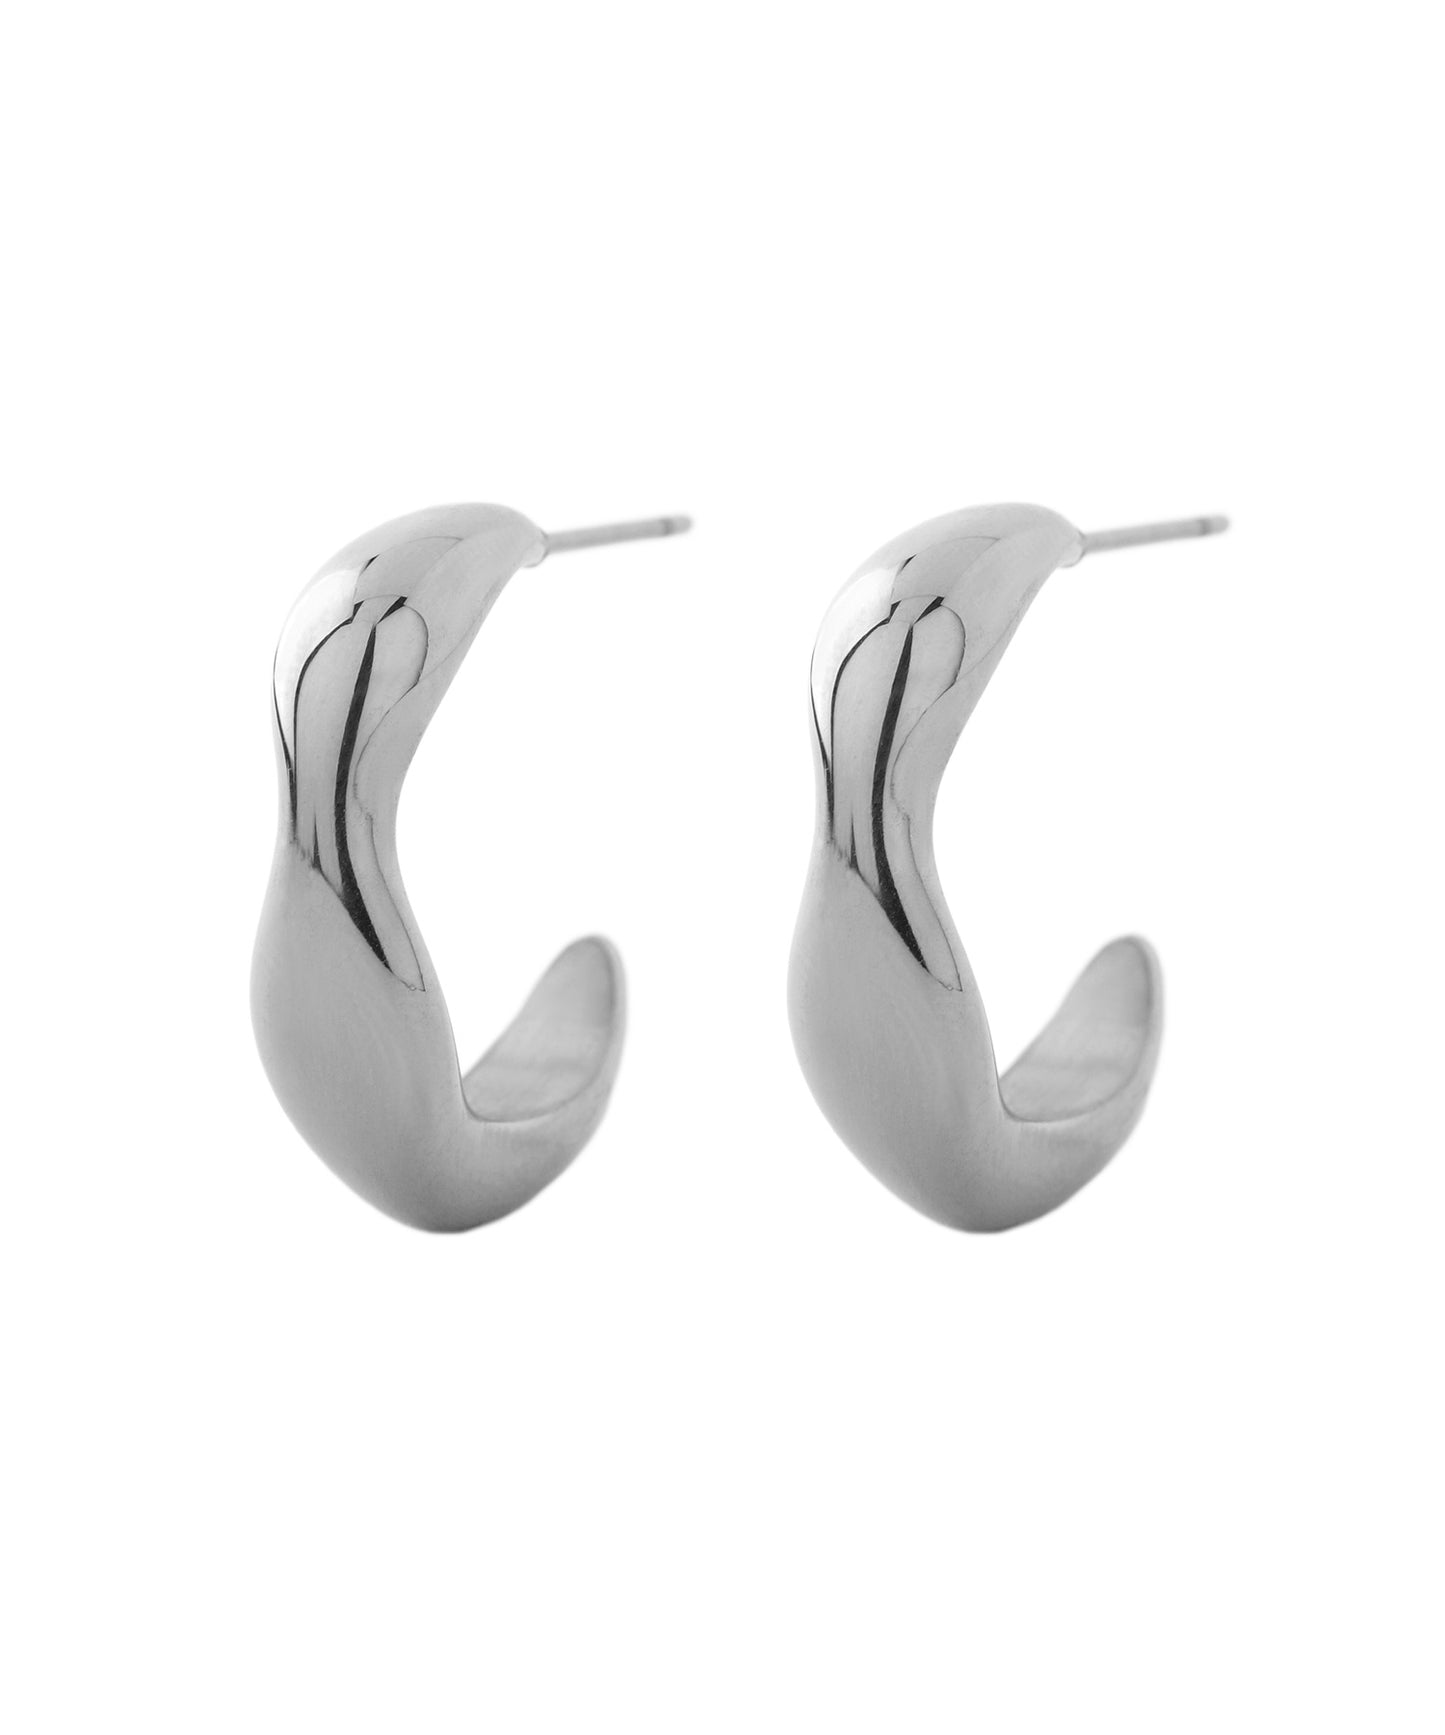 【Stainless Seel IP】Nuance Hoops Earrings